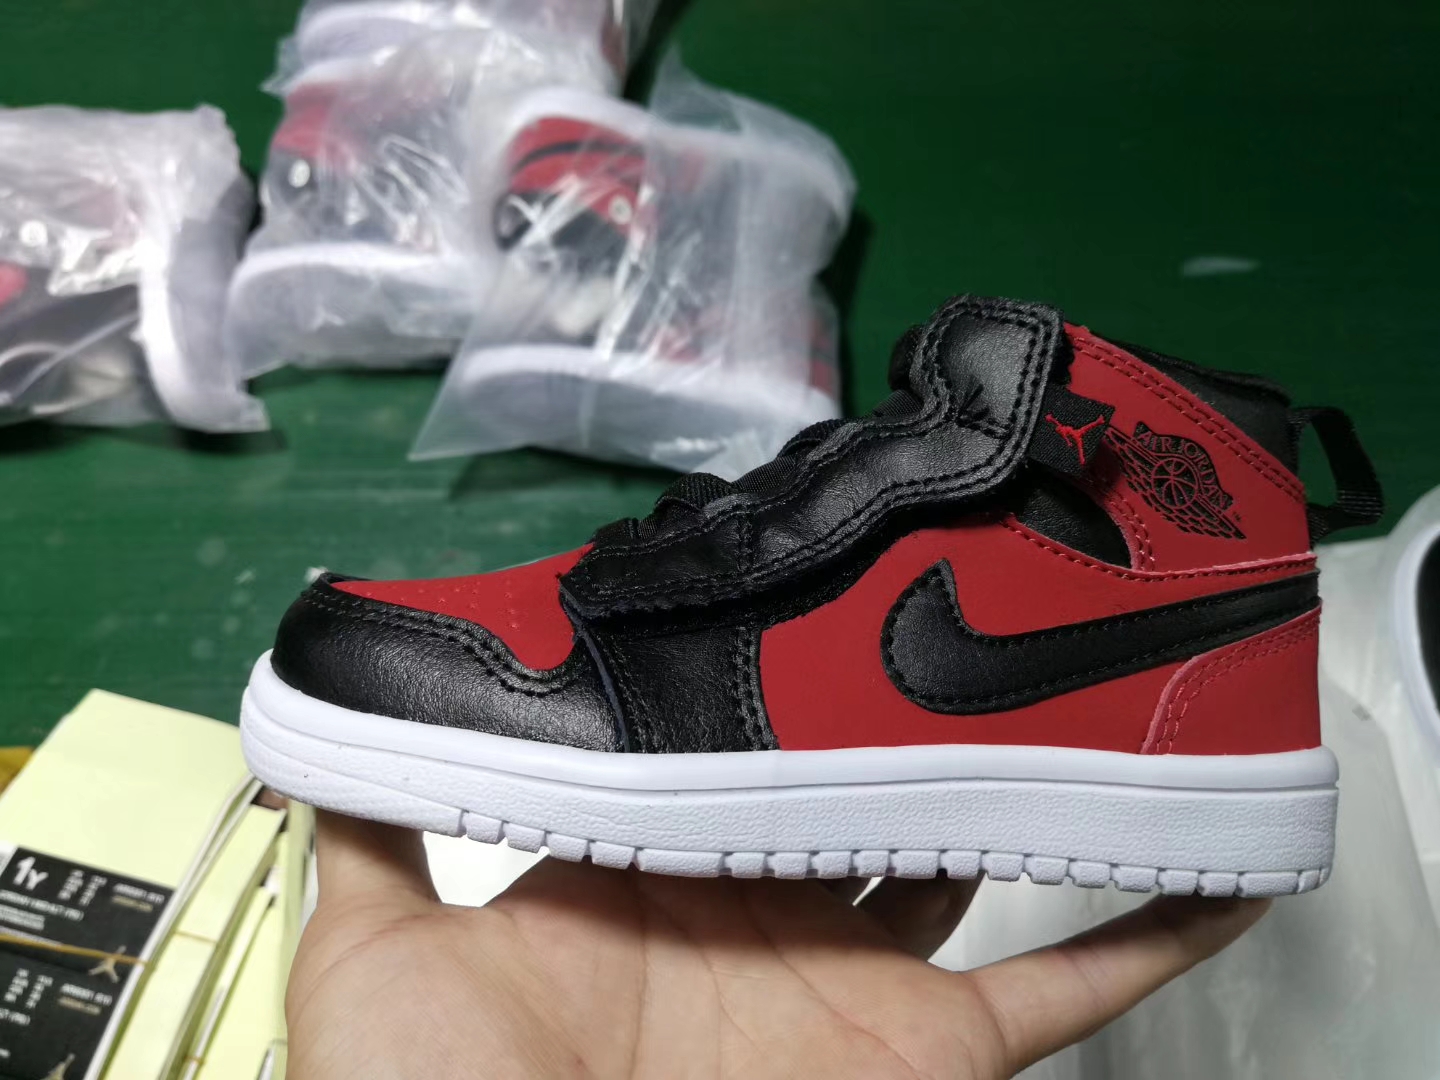 New Kids Air Jordan 1 Black Red Shoes